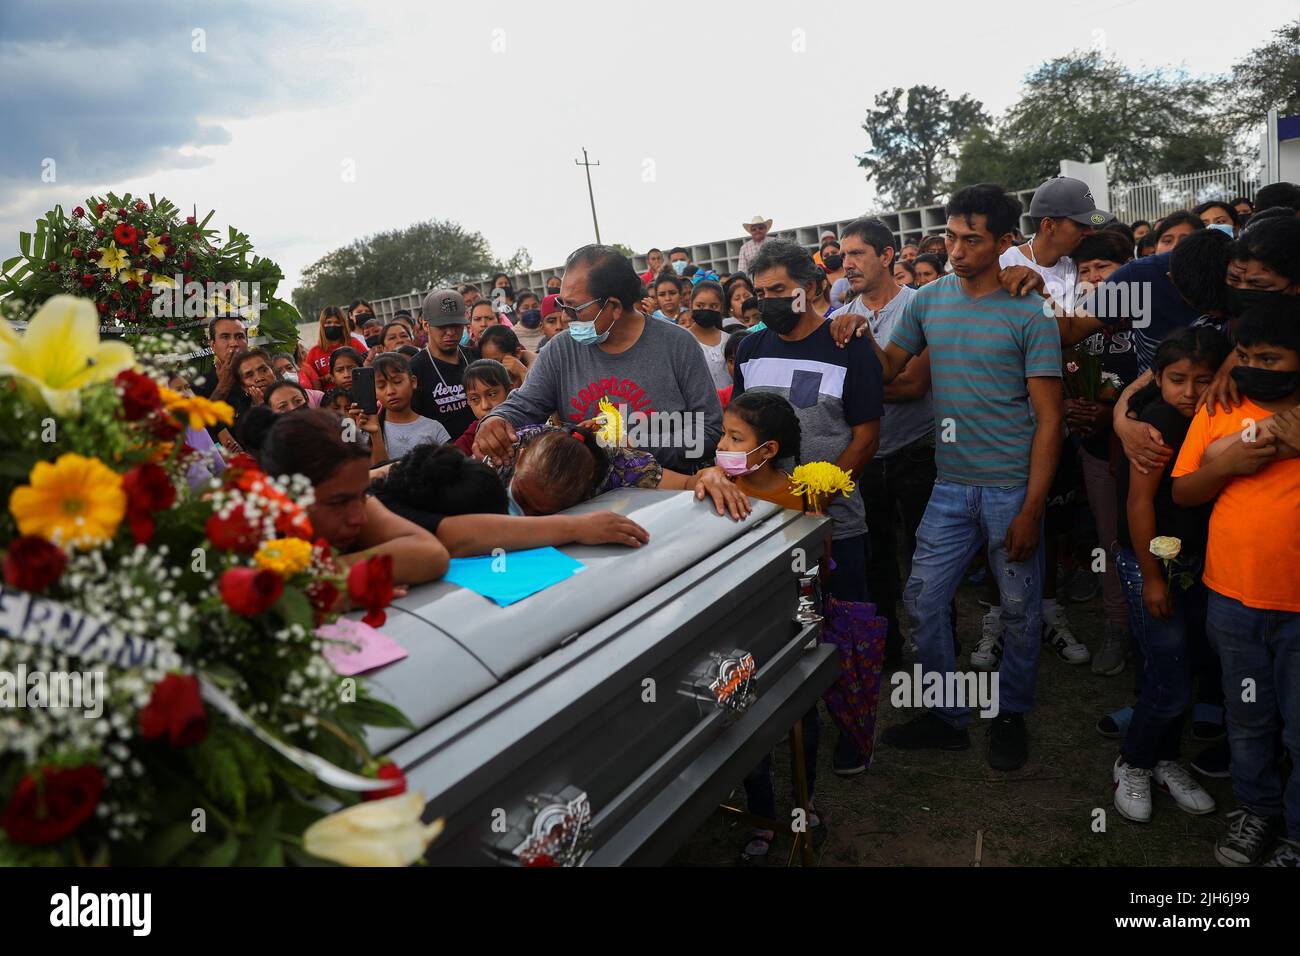 Familiares y amigos del difunto migrante José López, de 34 años, quien murió en un camión remolque en Texas, asisten a su funeral después de que sus restos fueran repatriados a México, en Celaya, estado de Guanajuato, México, el 15 de julio, 2022. REUTERS/Edgard Garrido Foto de stock